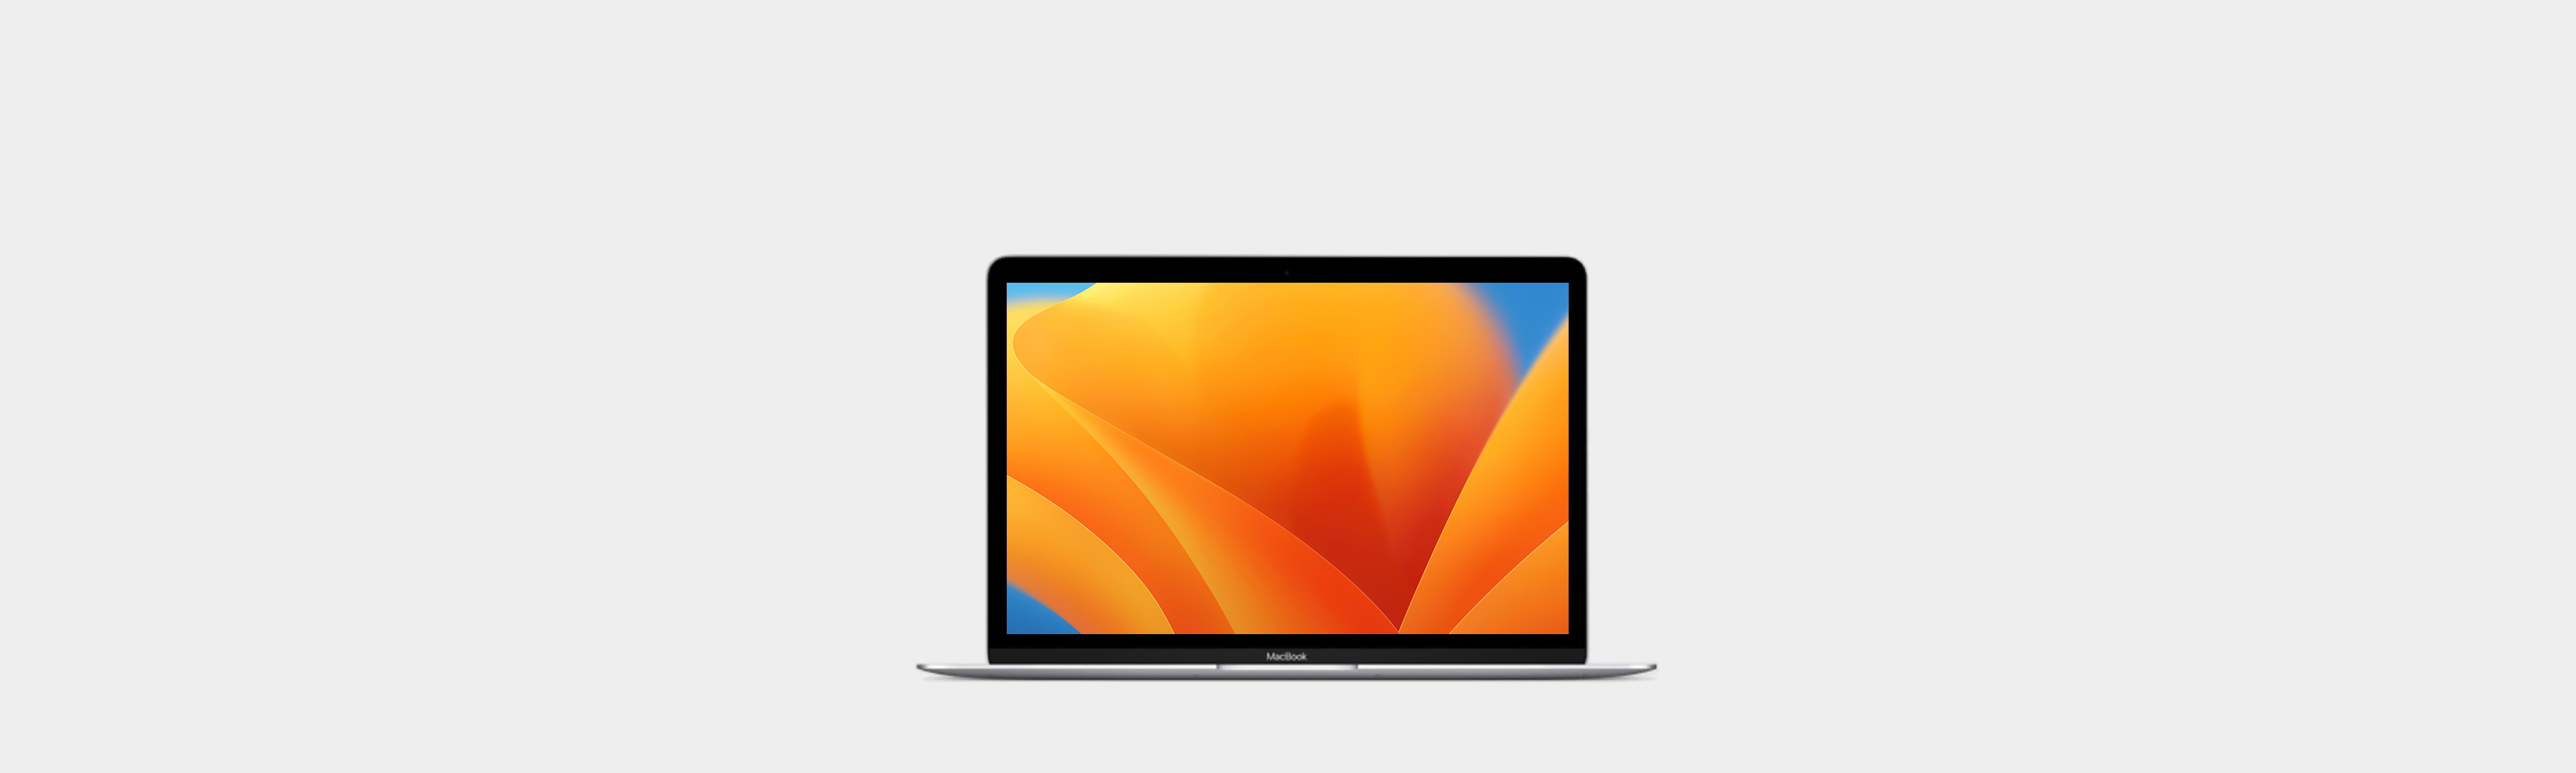 MacBook - Soporte técnico oficial de Apple